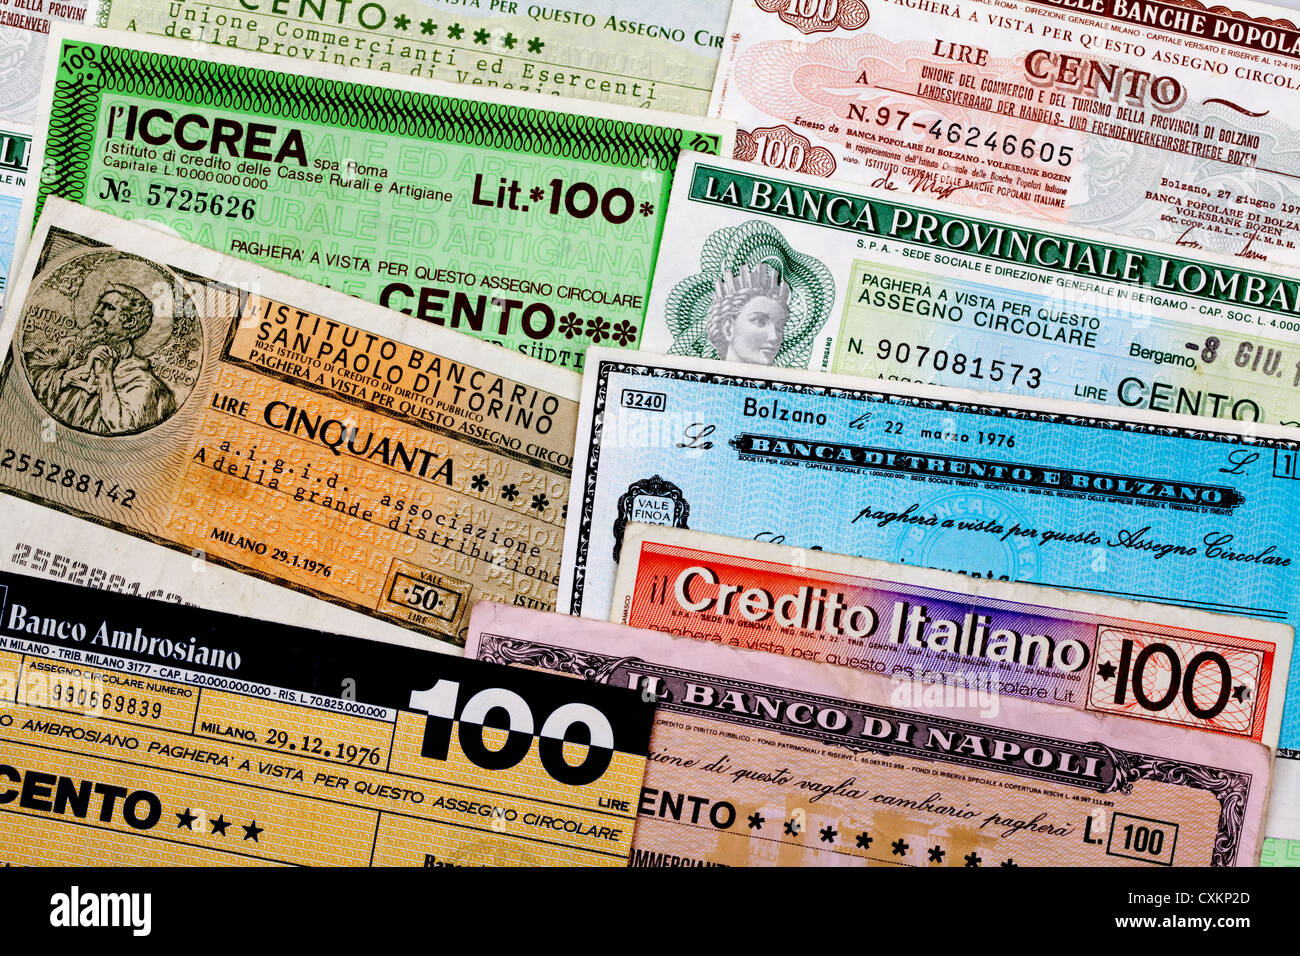 Miniassegni Italien, virement bancaire, mandat avec une valeur faible, il Banco Ambrosiano, Mailand Banque D'Images